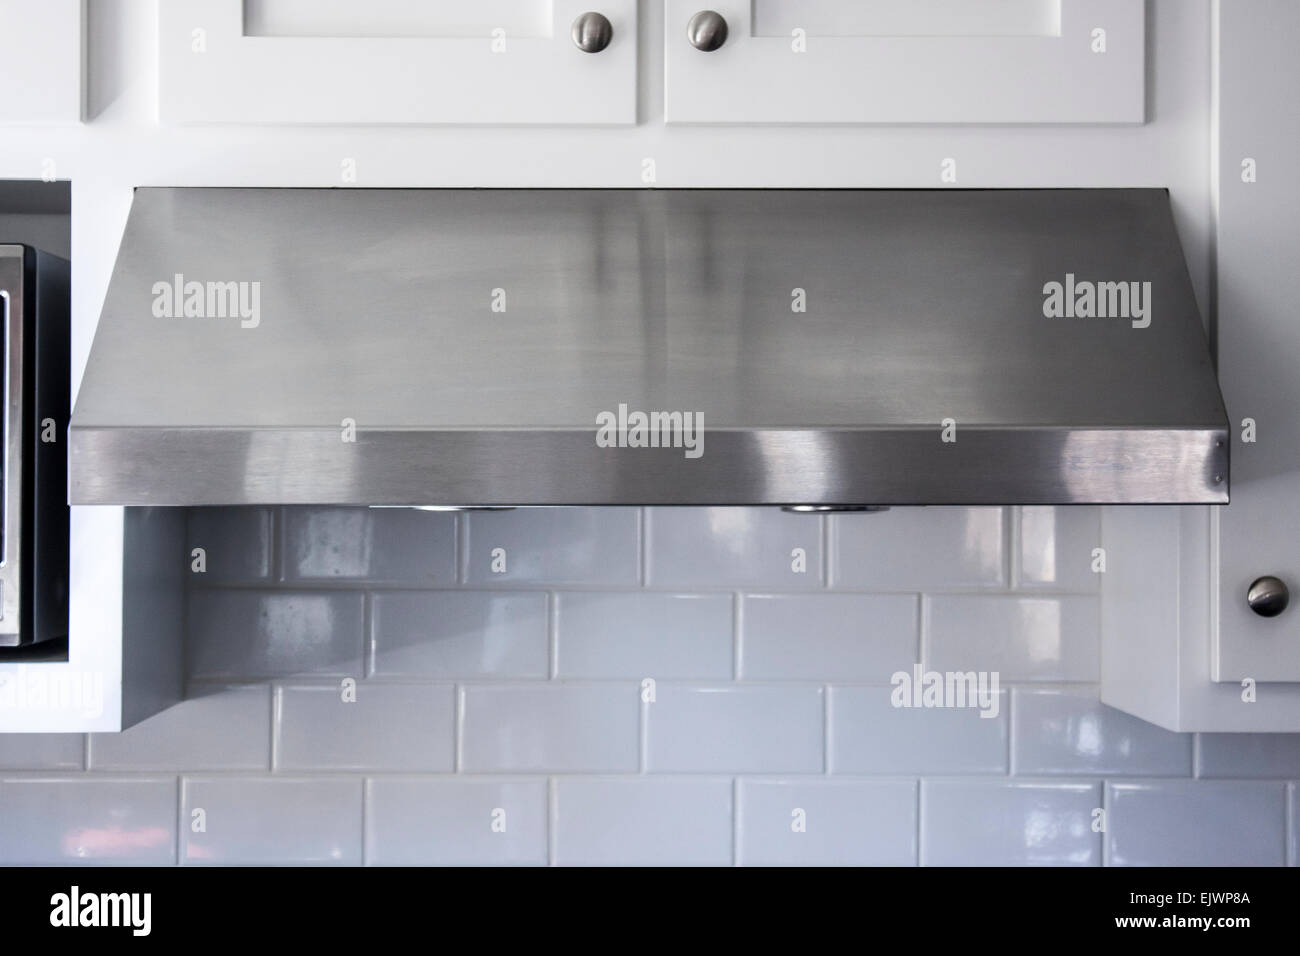 Modern aluminum kitchen range or stove hood Stock Photo